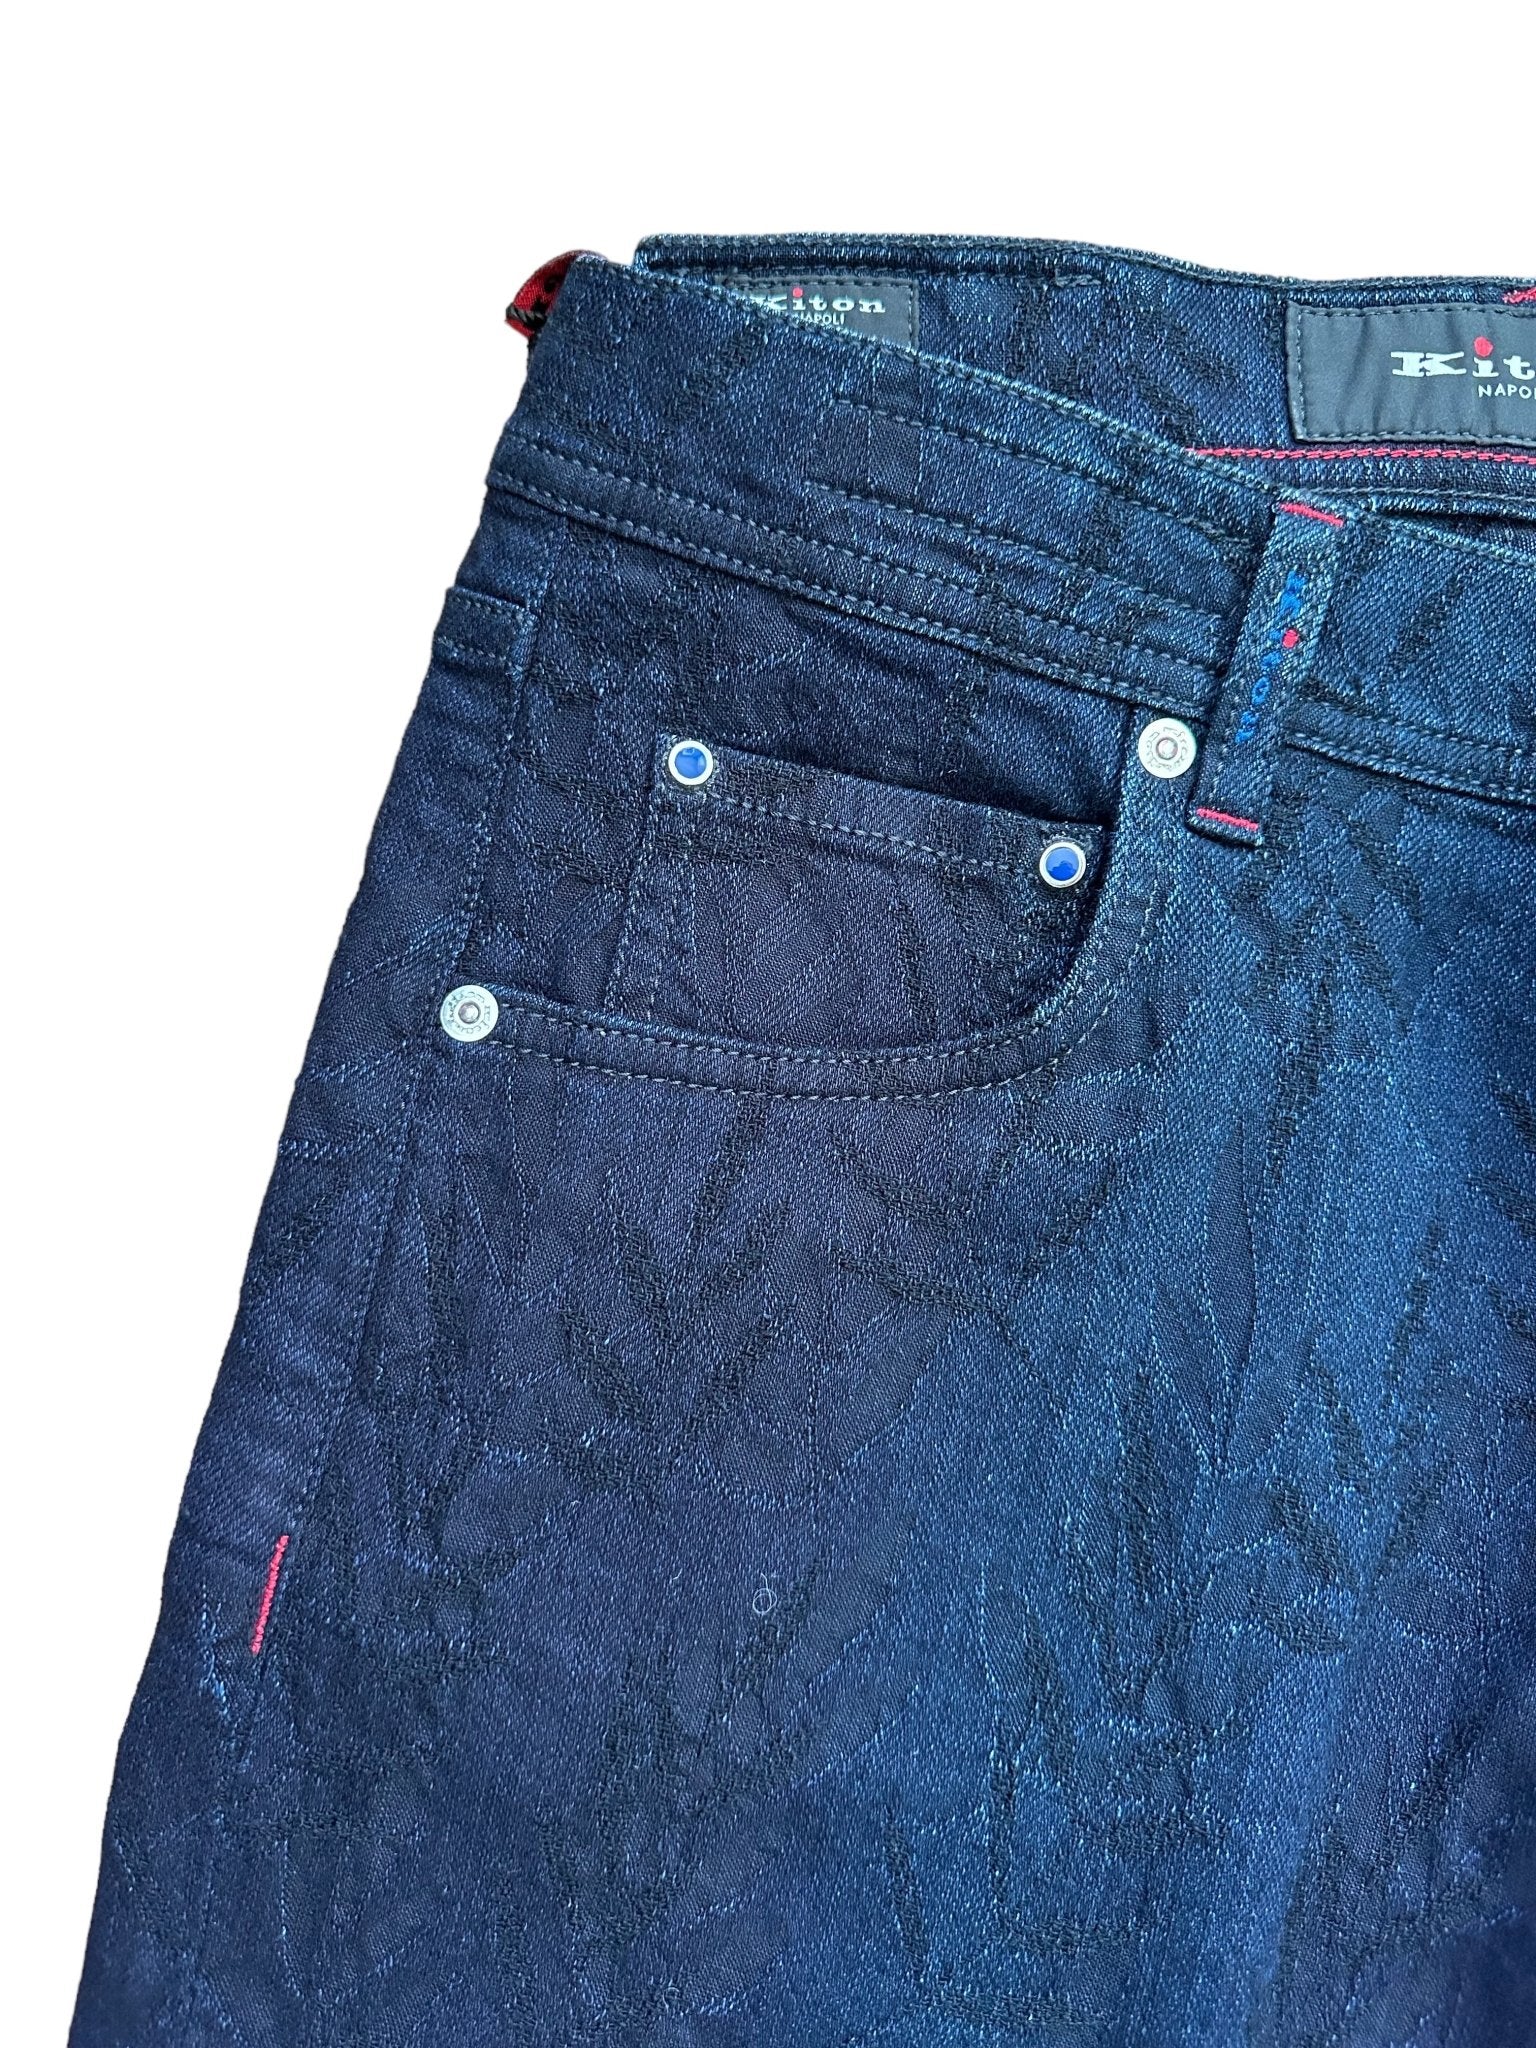 Kiton Jeans/Hose mit gestickten Applikationen - 24/7 Clothing